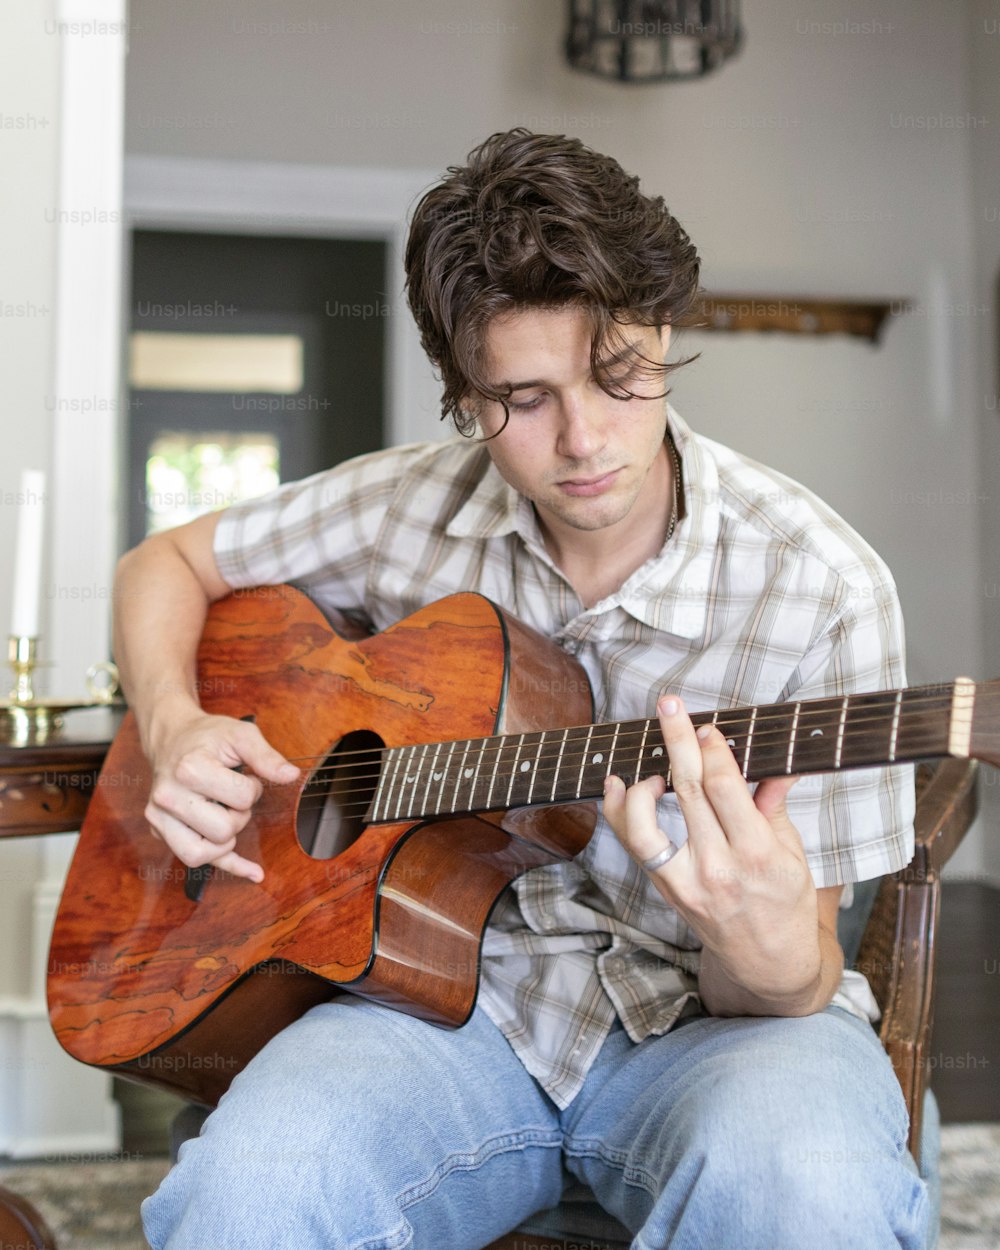 Un uomo seduto su una sedia che suona una chitarra